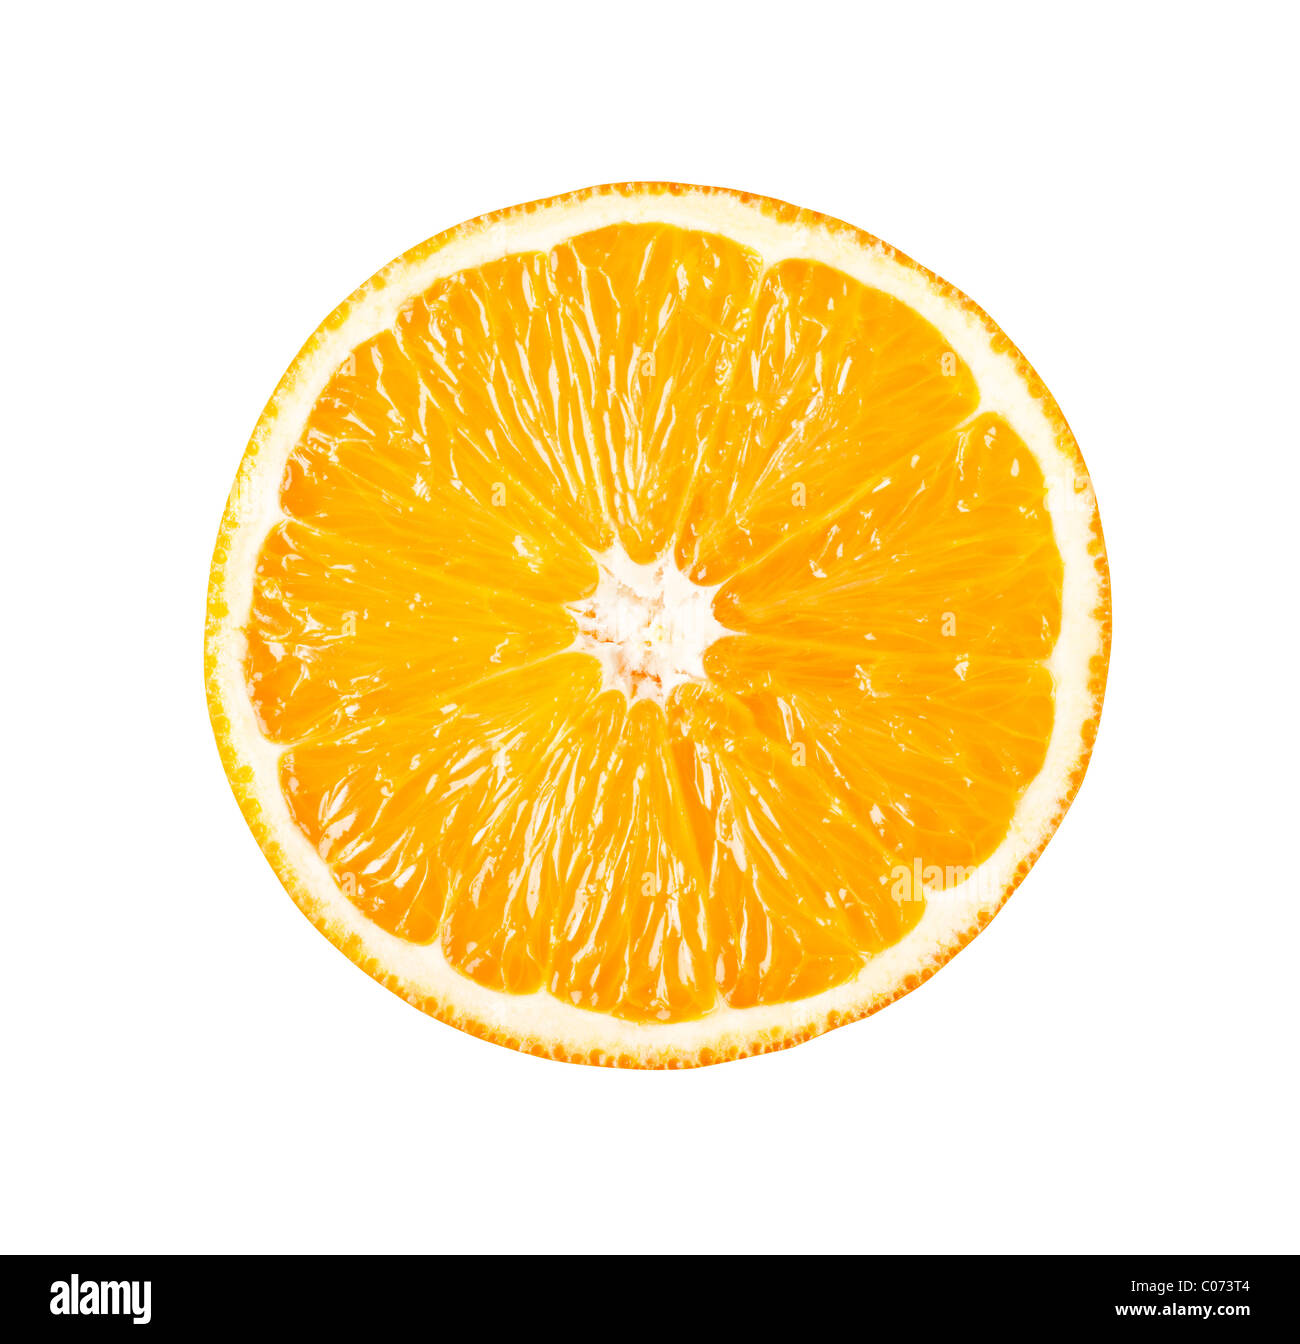 Orange parfaitement rond coupé en deux isolé sur fond blanc Banque D'Images